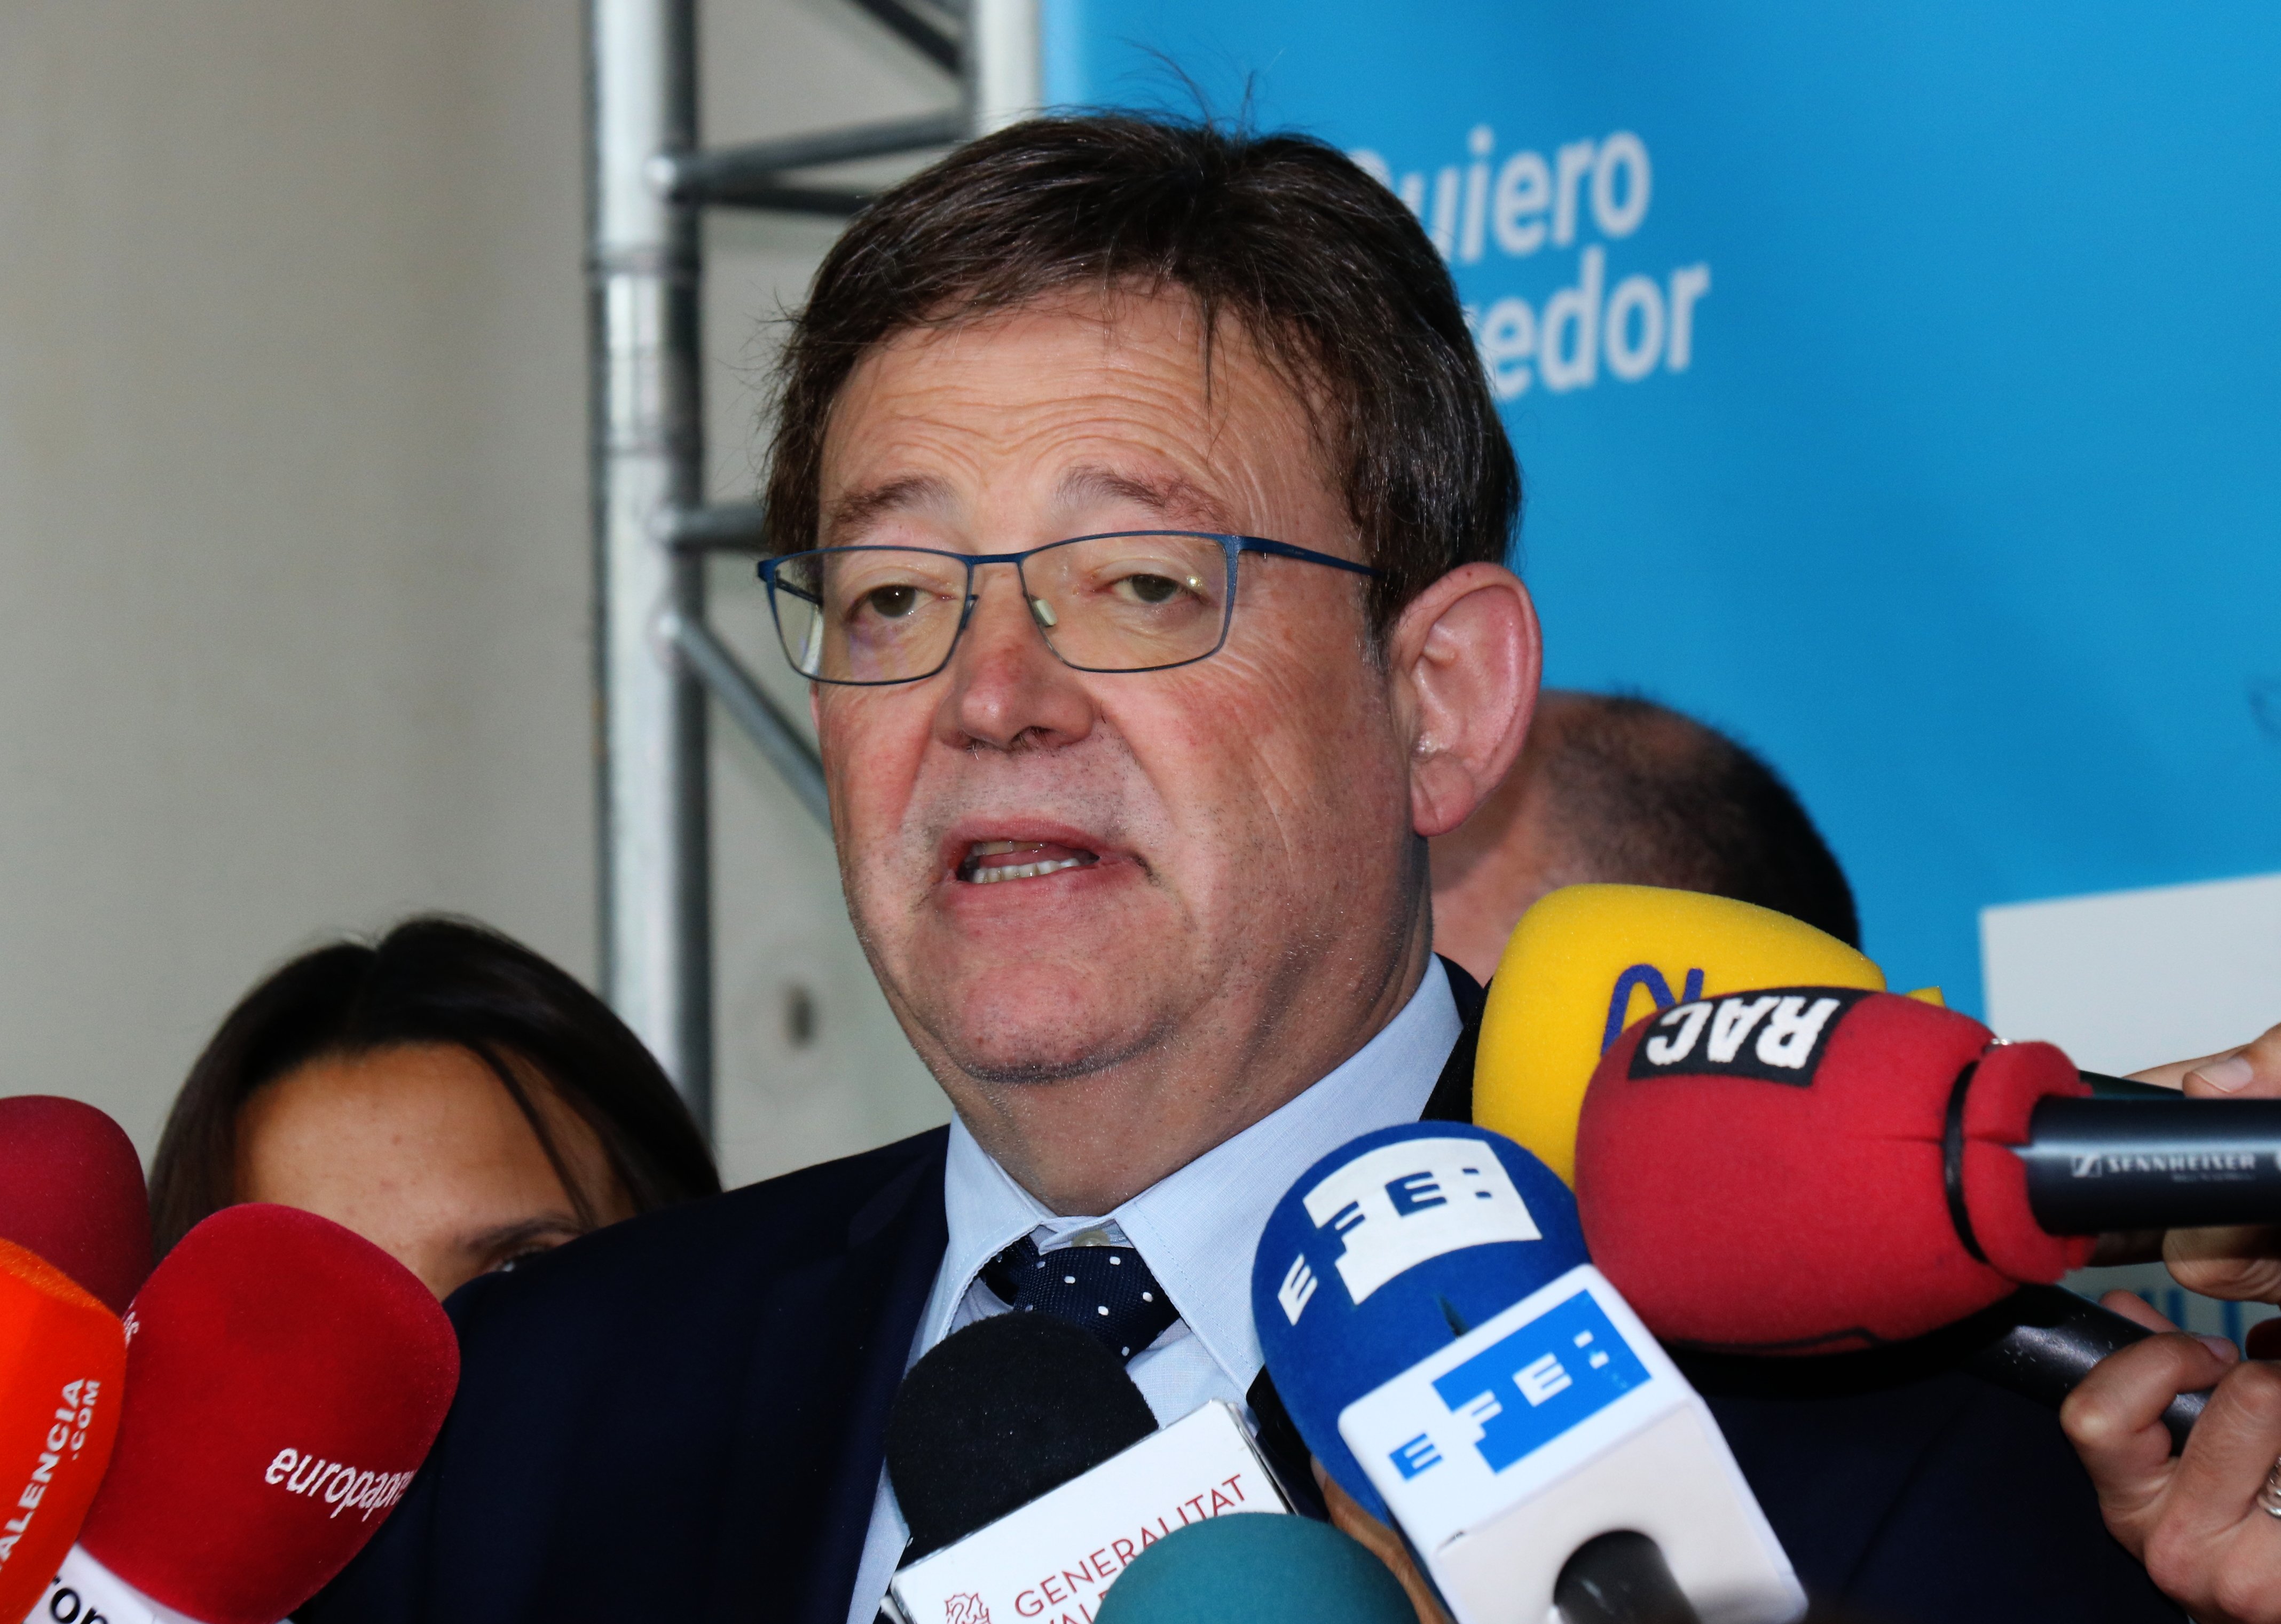 El PP denunciarà Ximo Puig i alguns ministres per no portar mascareta